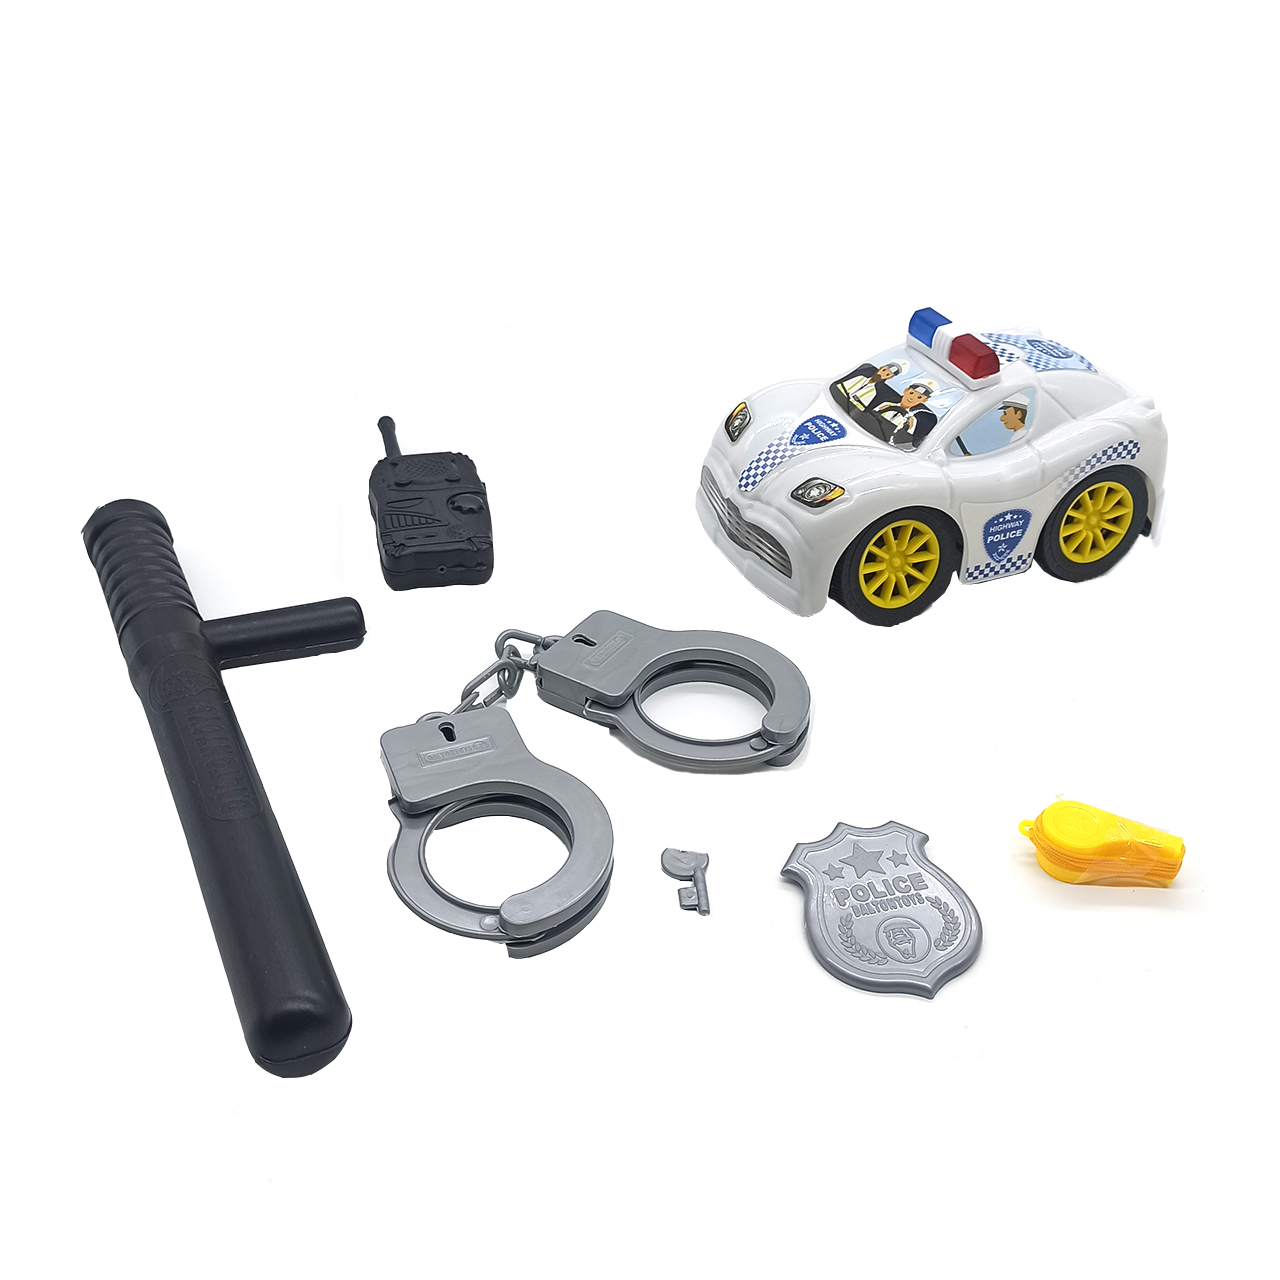 اسباب بازی مدل ست ماشین پلیس شهر کد 1009